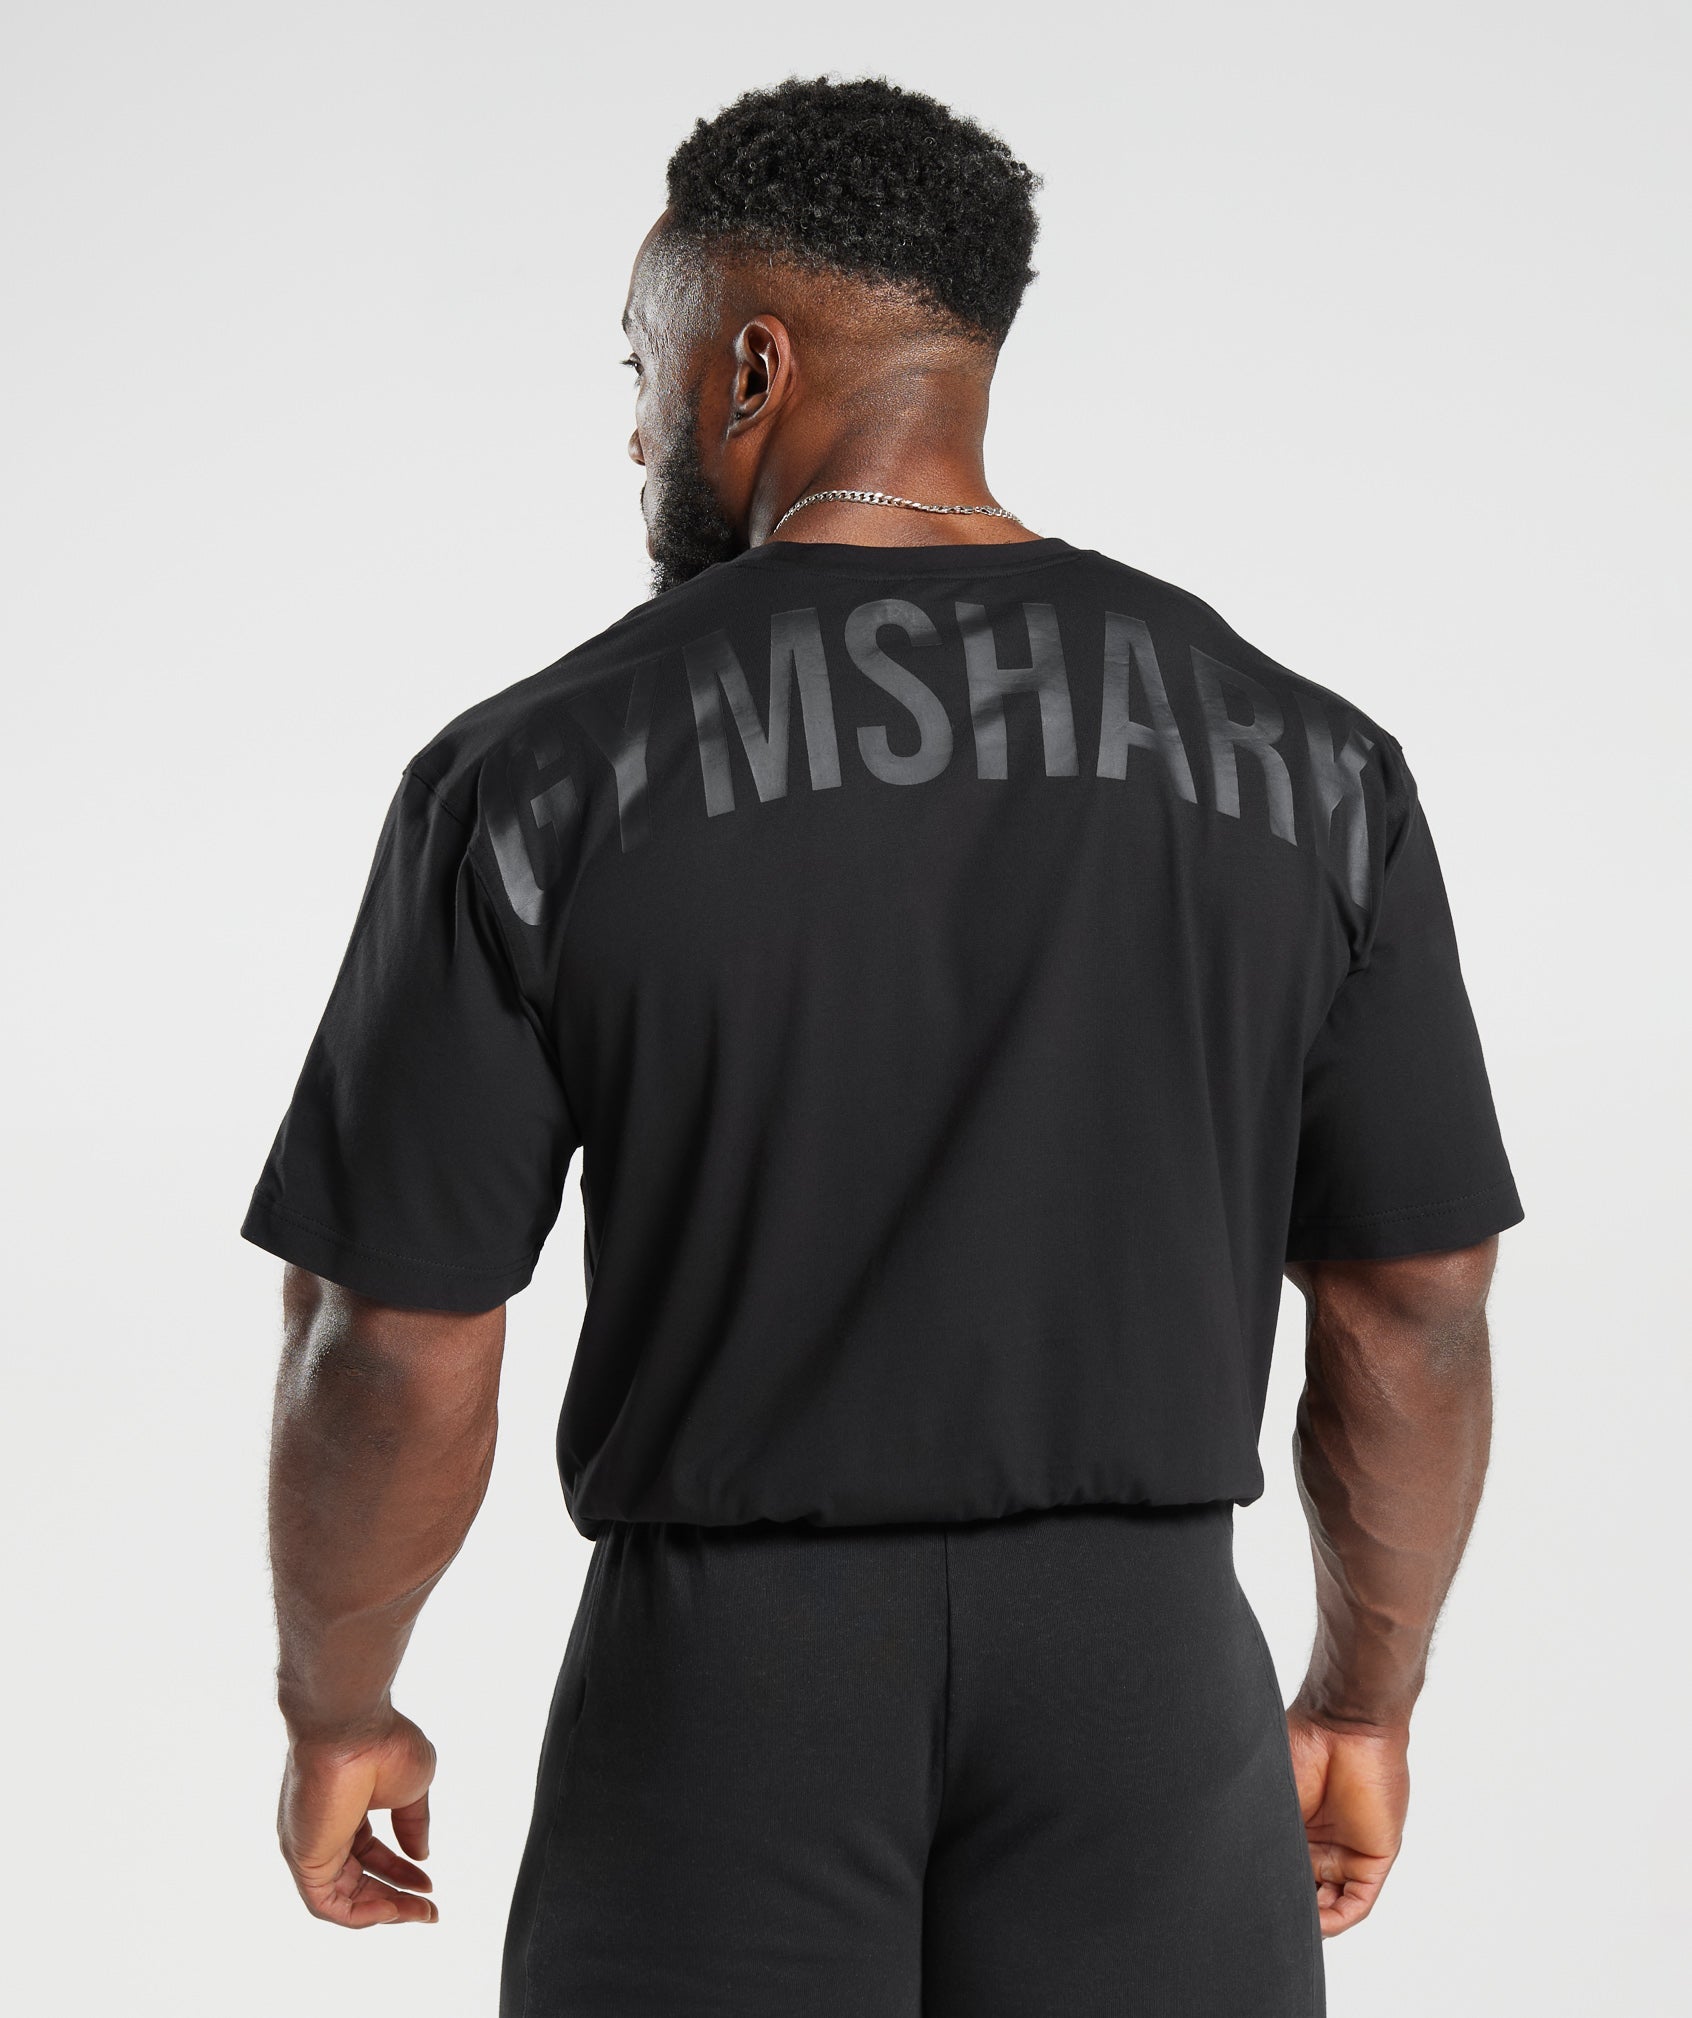 Gymshark Power T-Shirt - Desert Beige